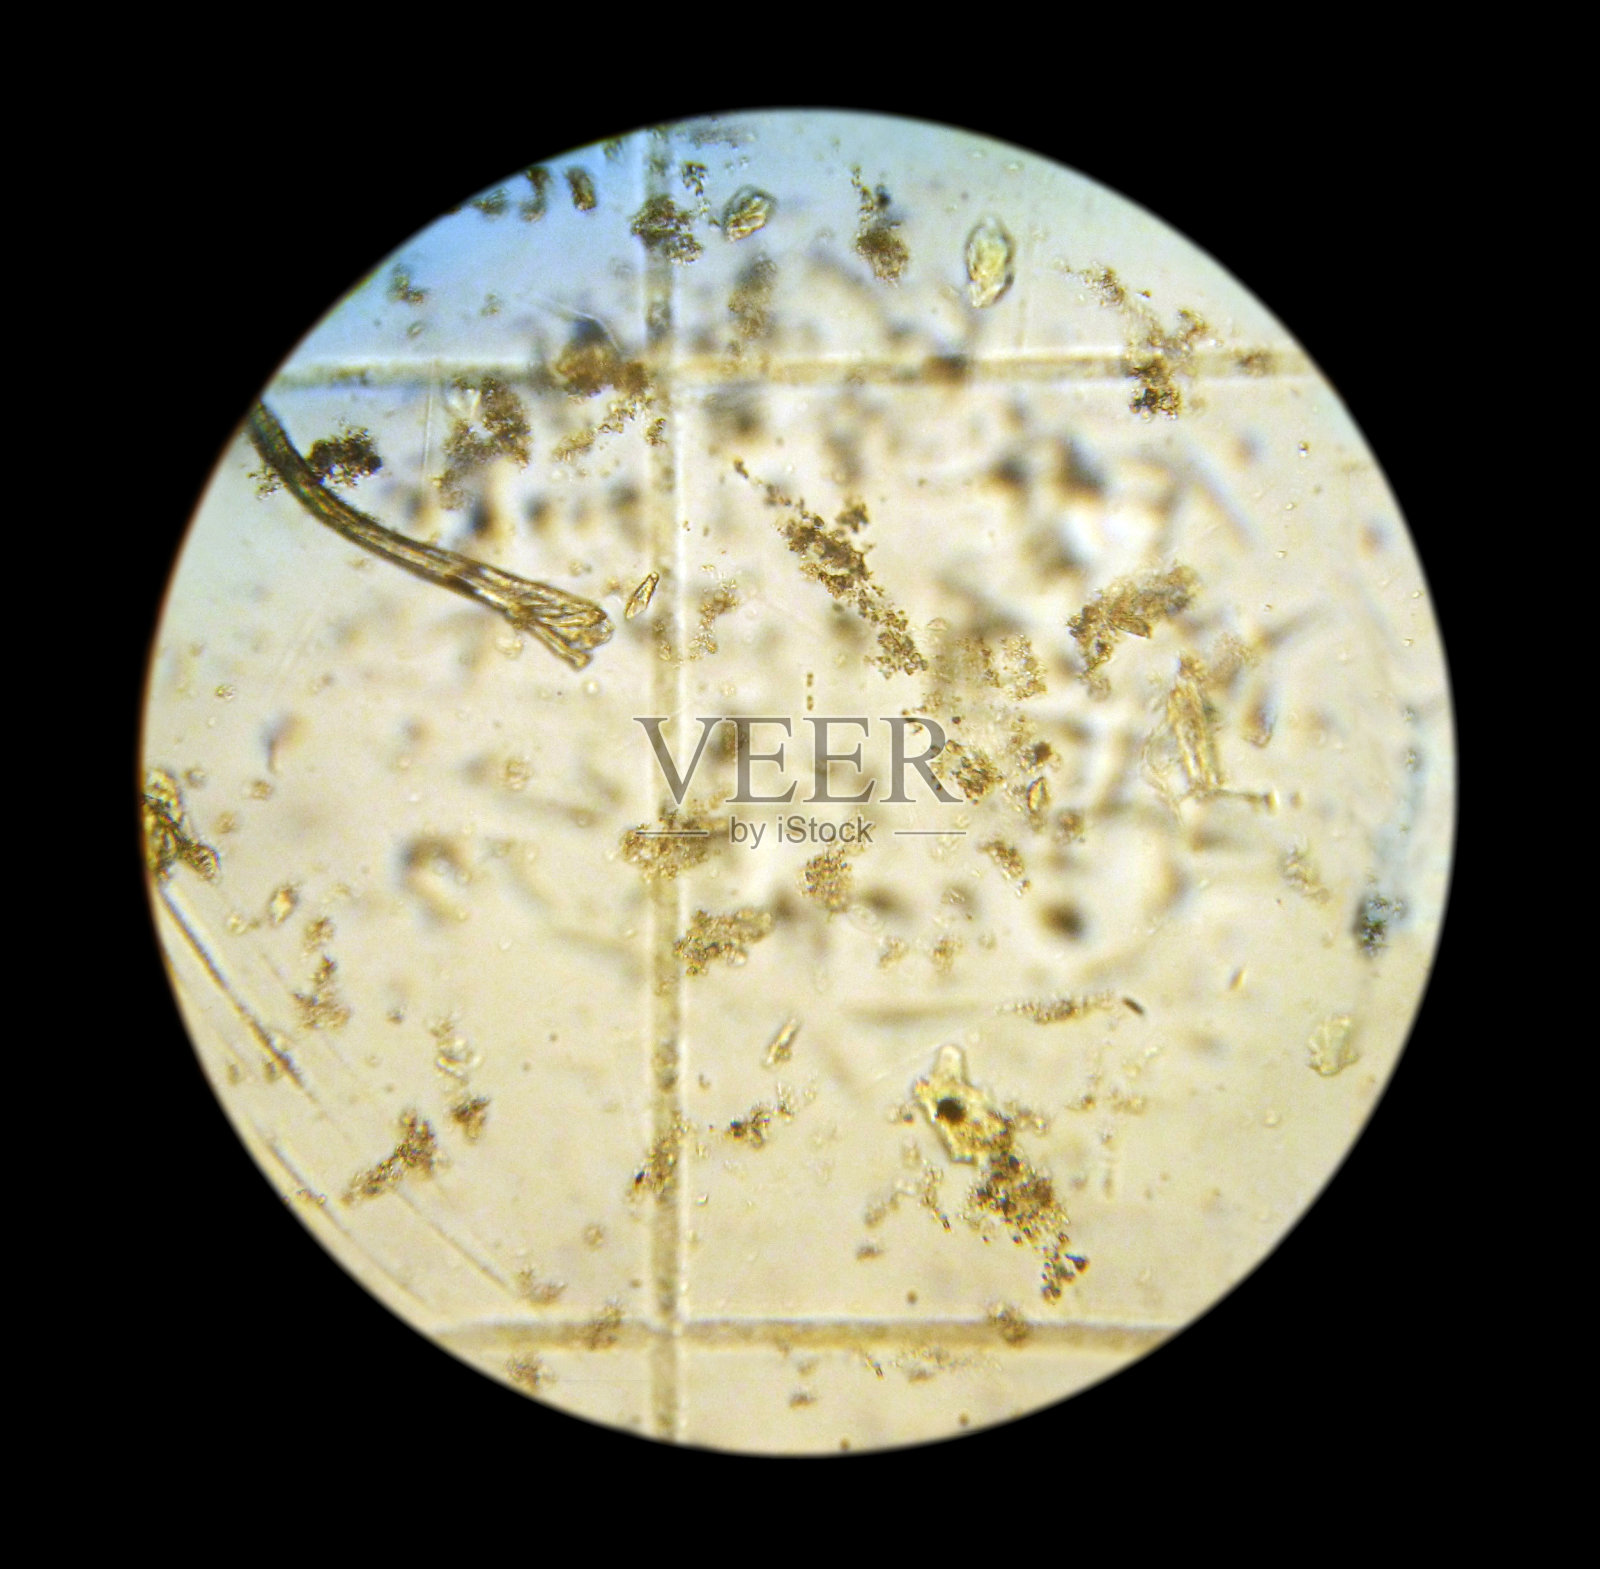 浮游植物细胞。这张照片是用光学显微镜用照相机拍摄的。俄罗斯浮游植物样本，滨海边海，日本海，东方湾，2009照片摄影图片